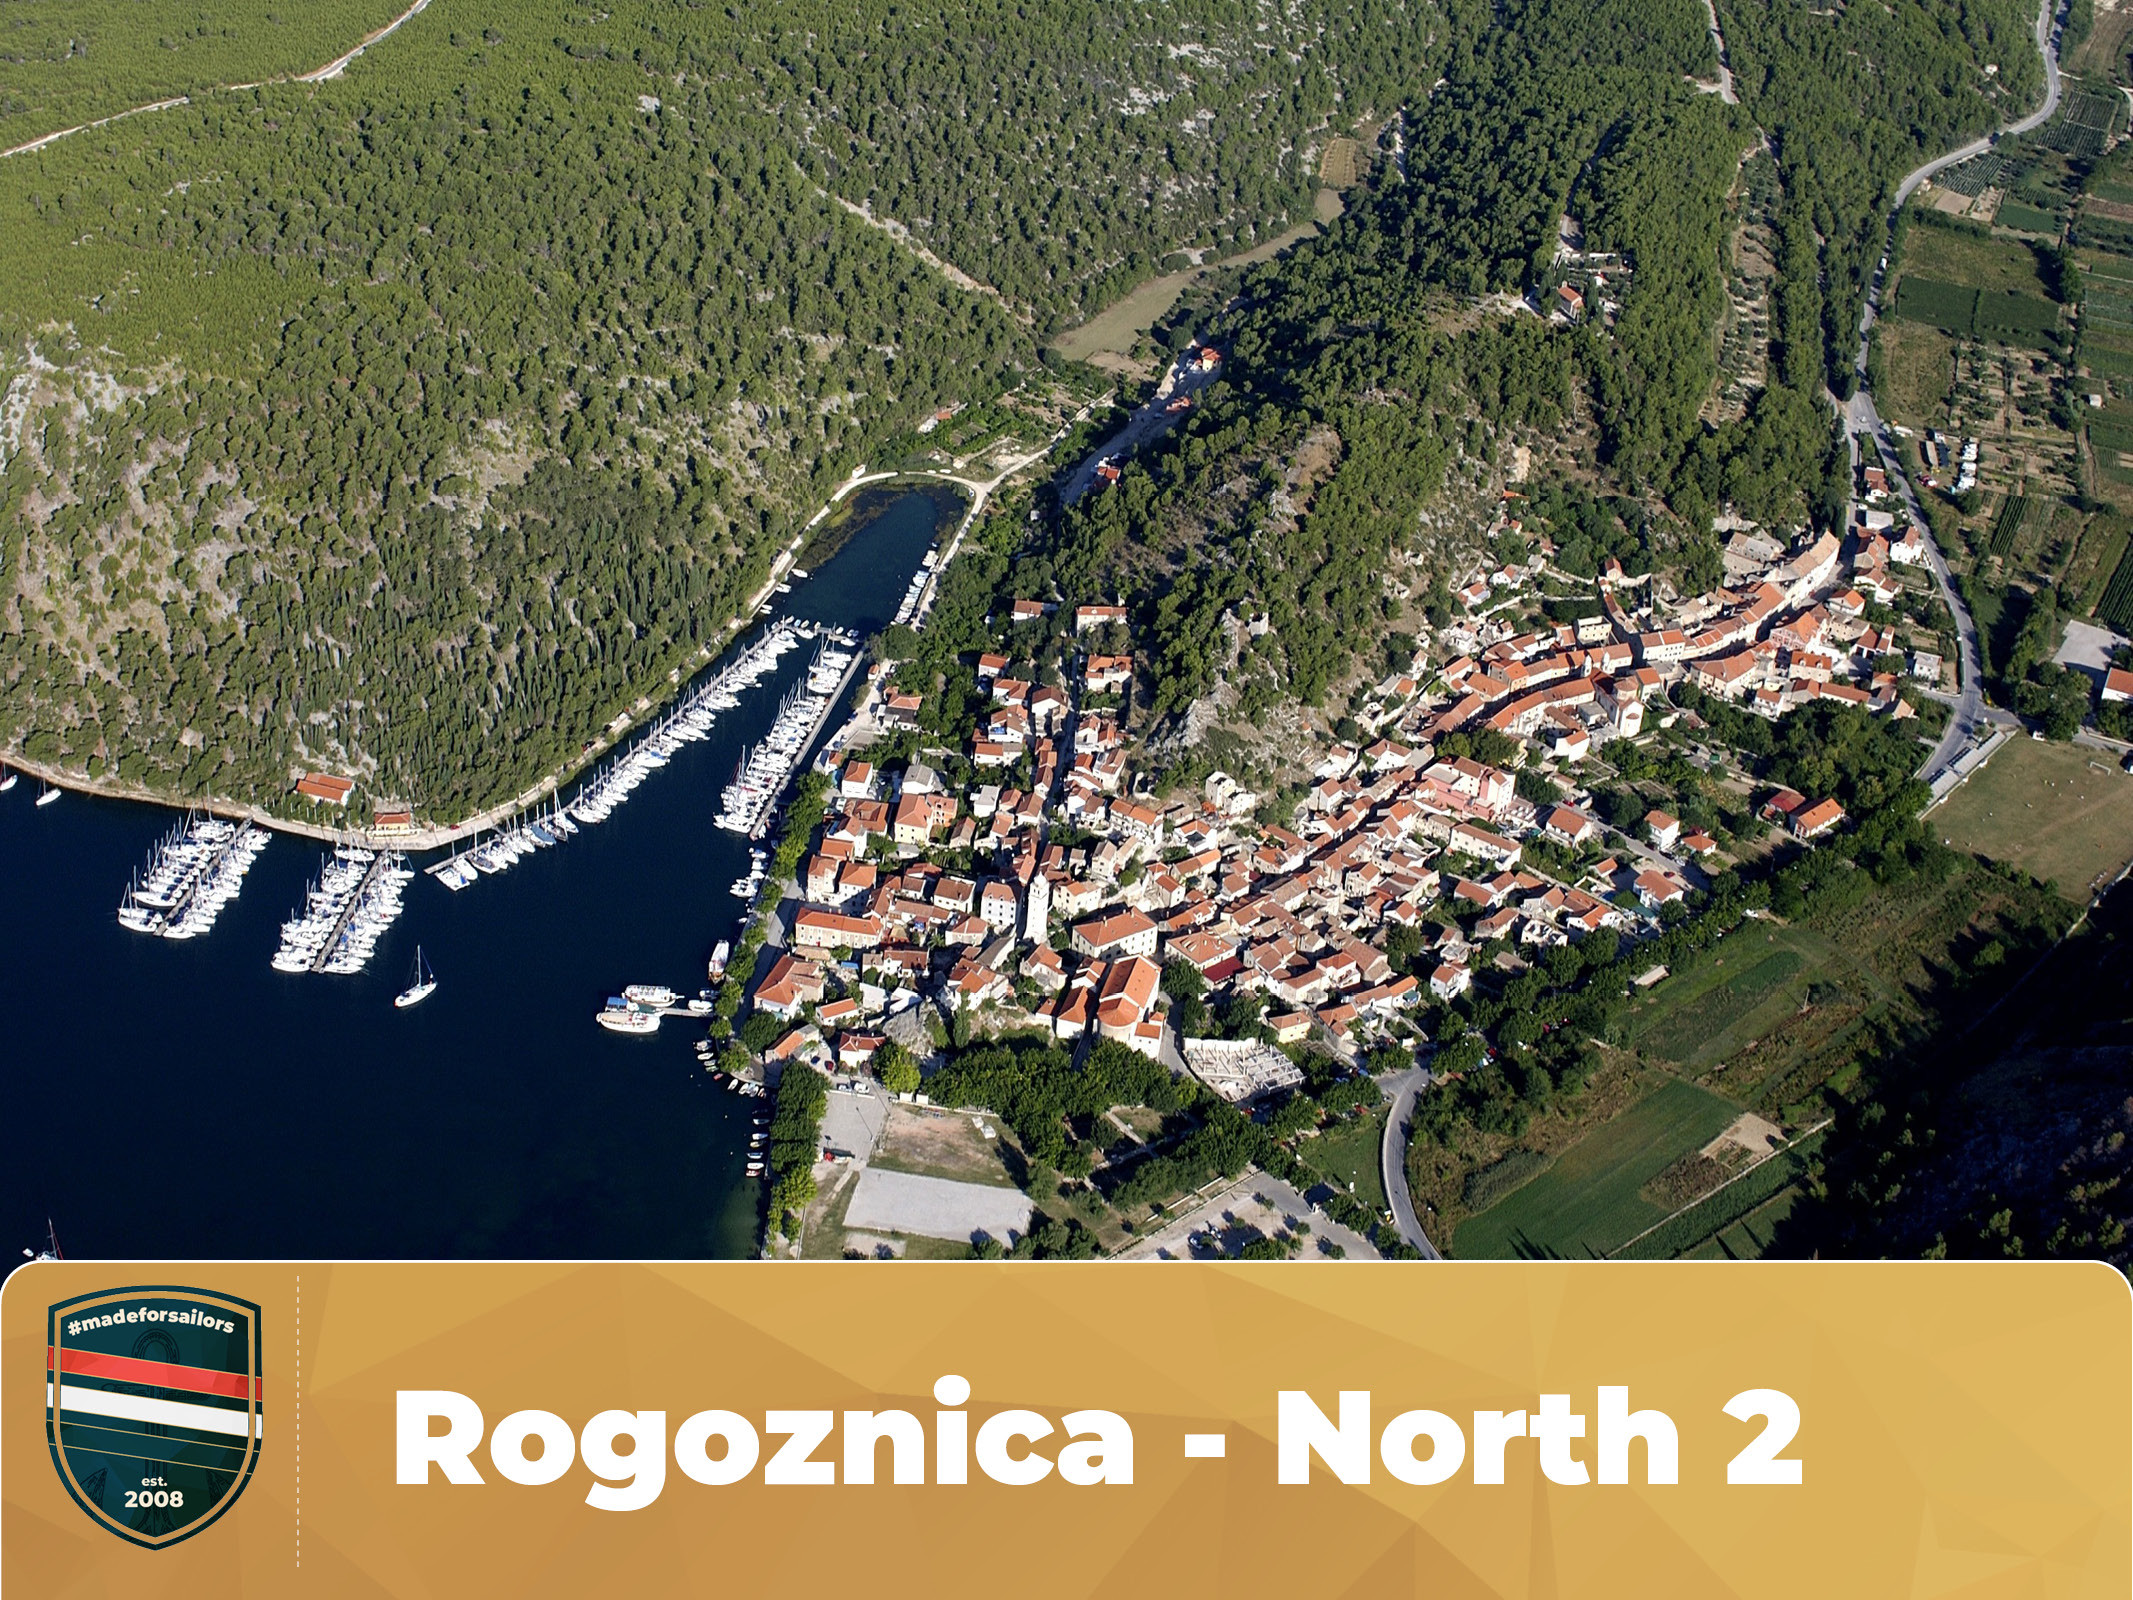 Rogoznica - North 2 Route